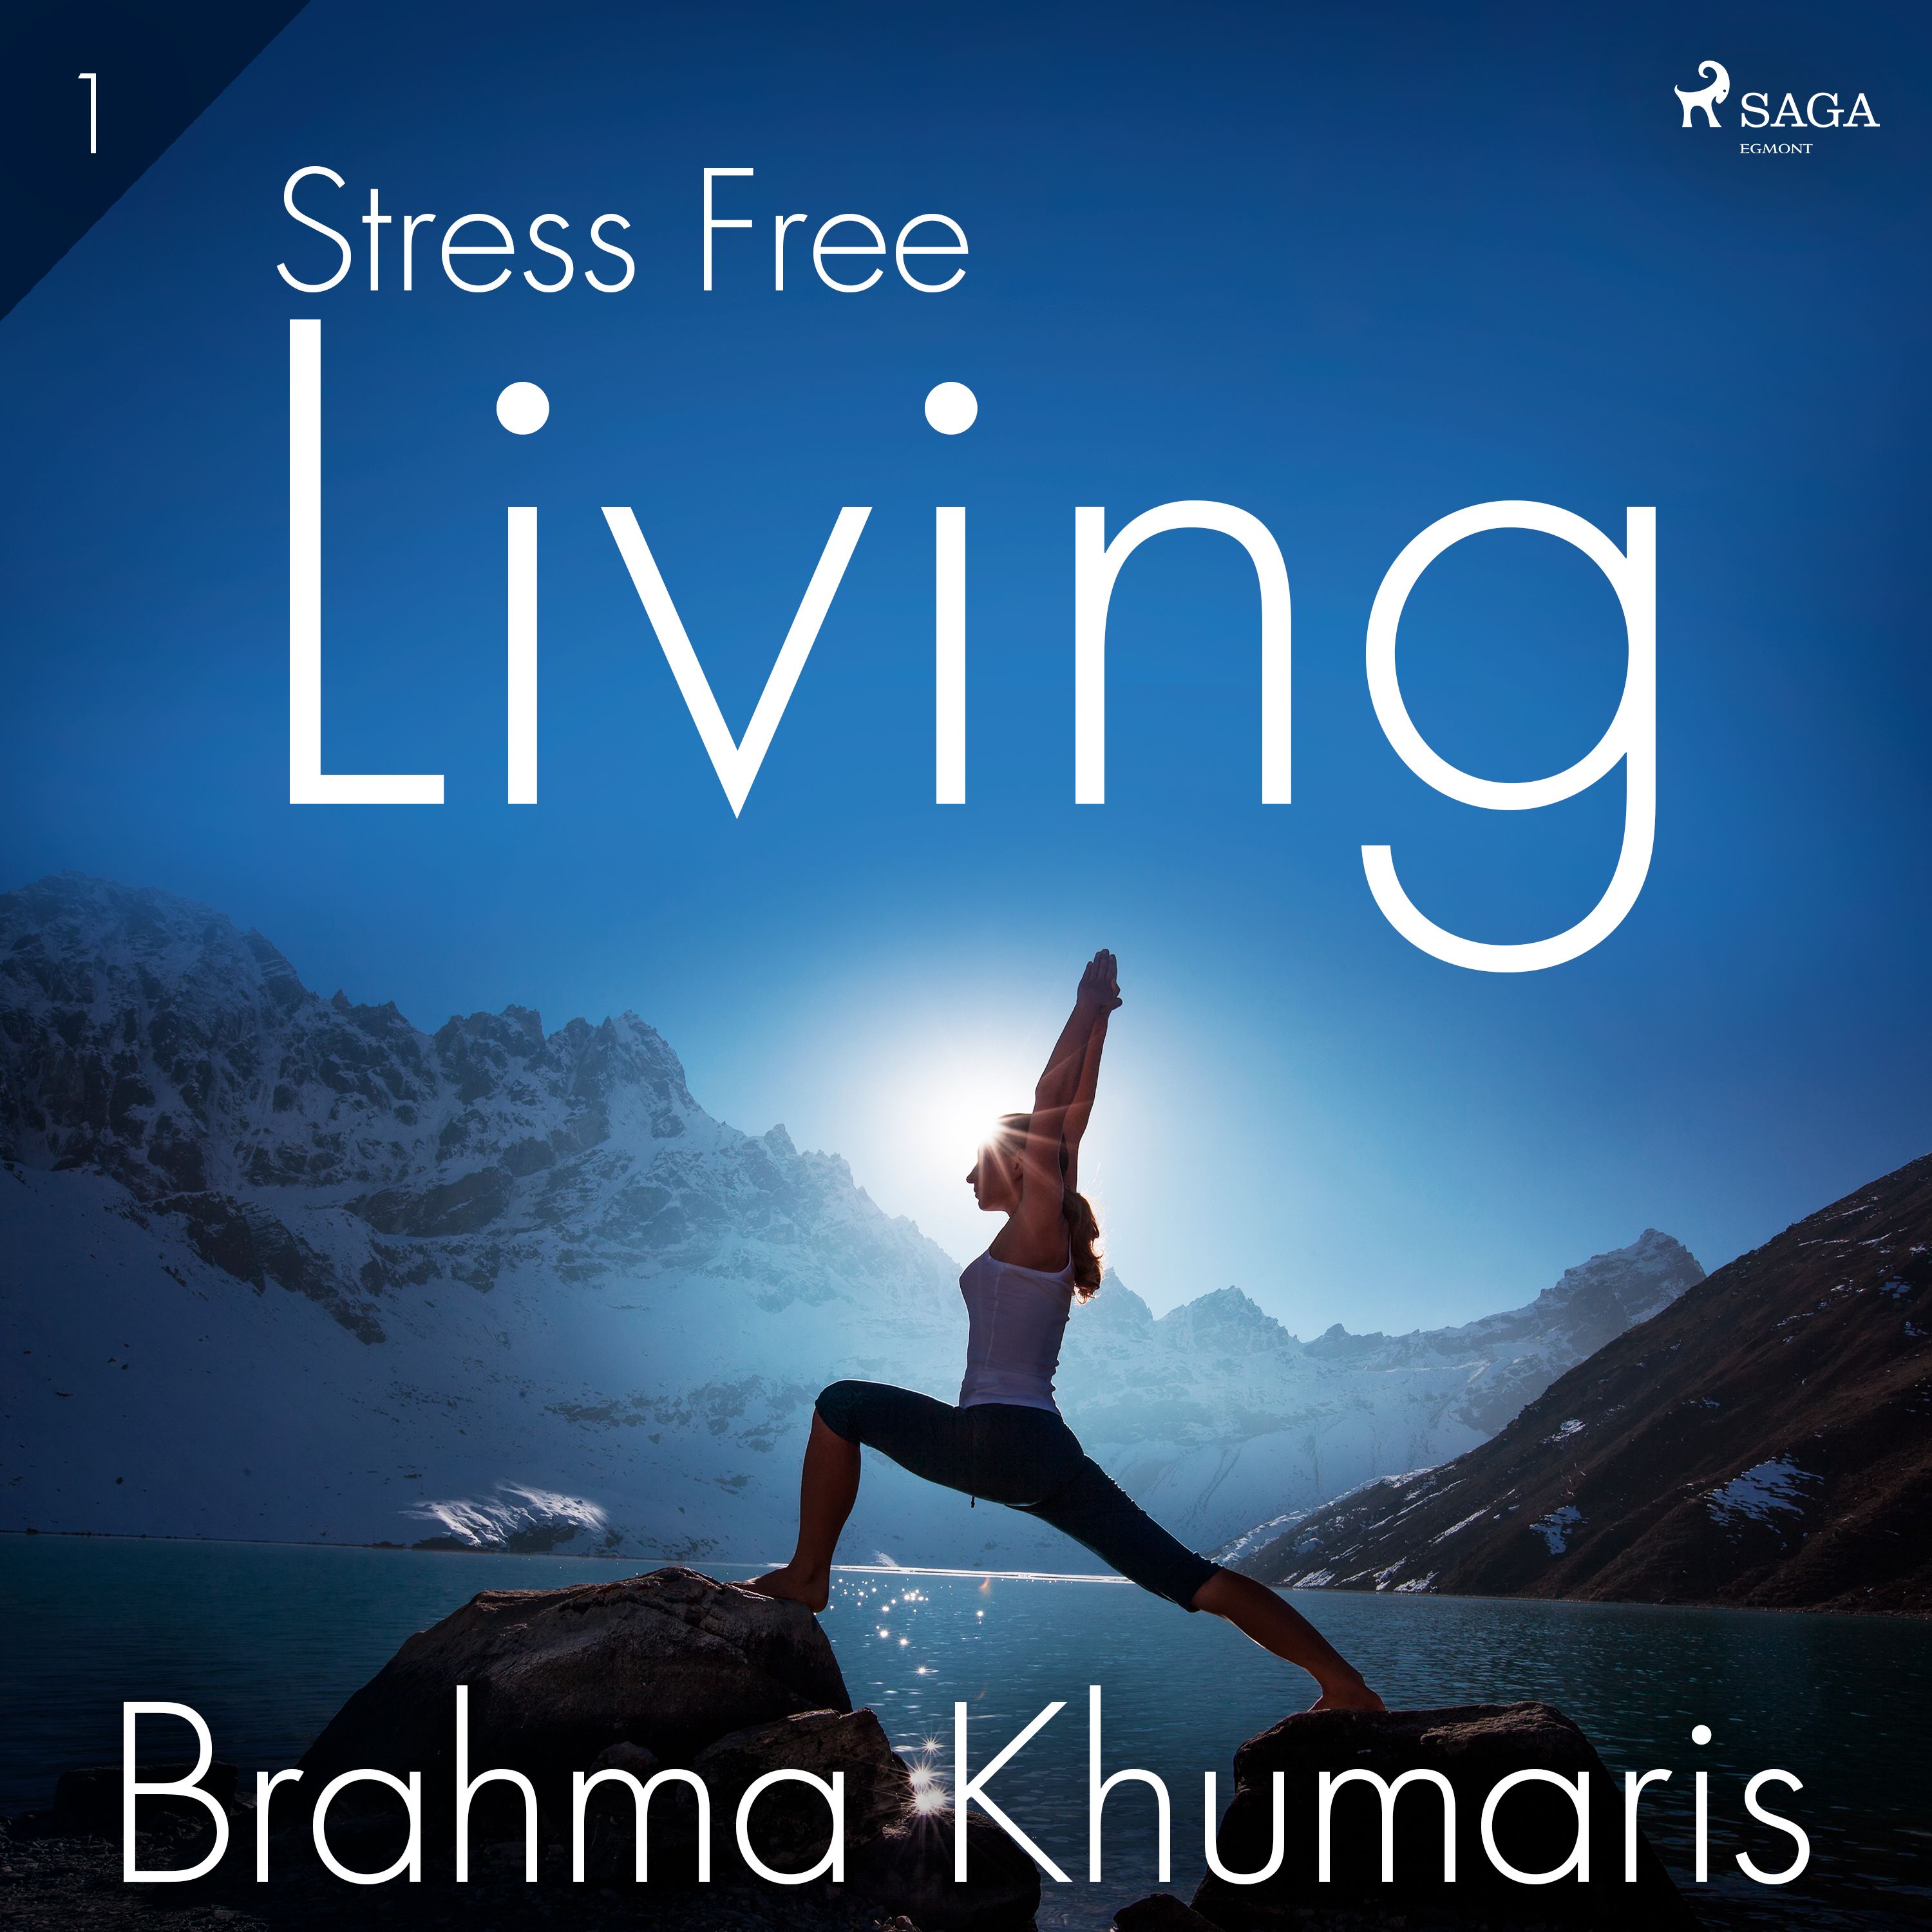 Stress Free Living 1, ljudbok av Brahma Khumaris